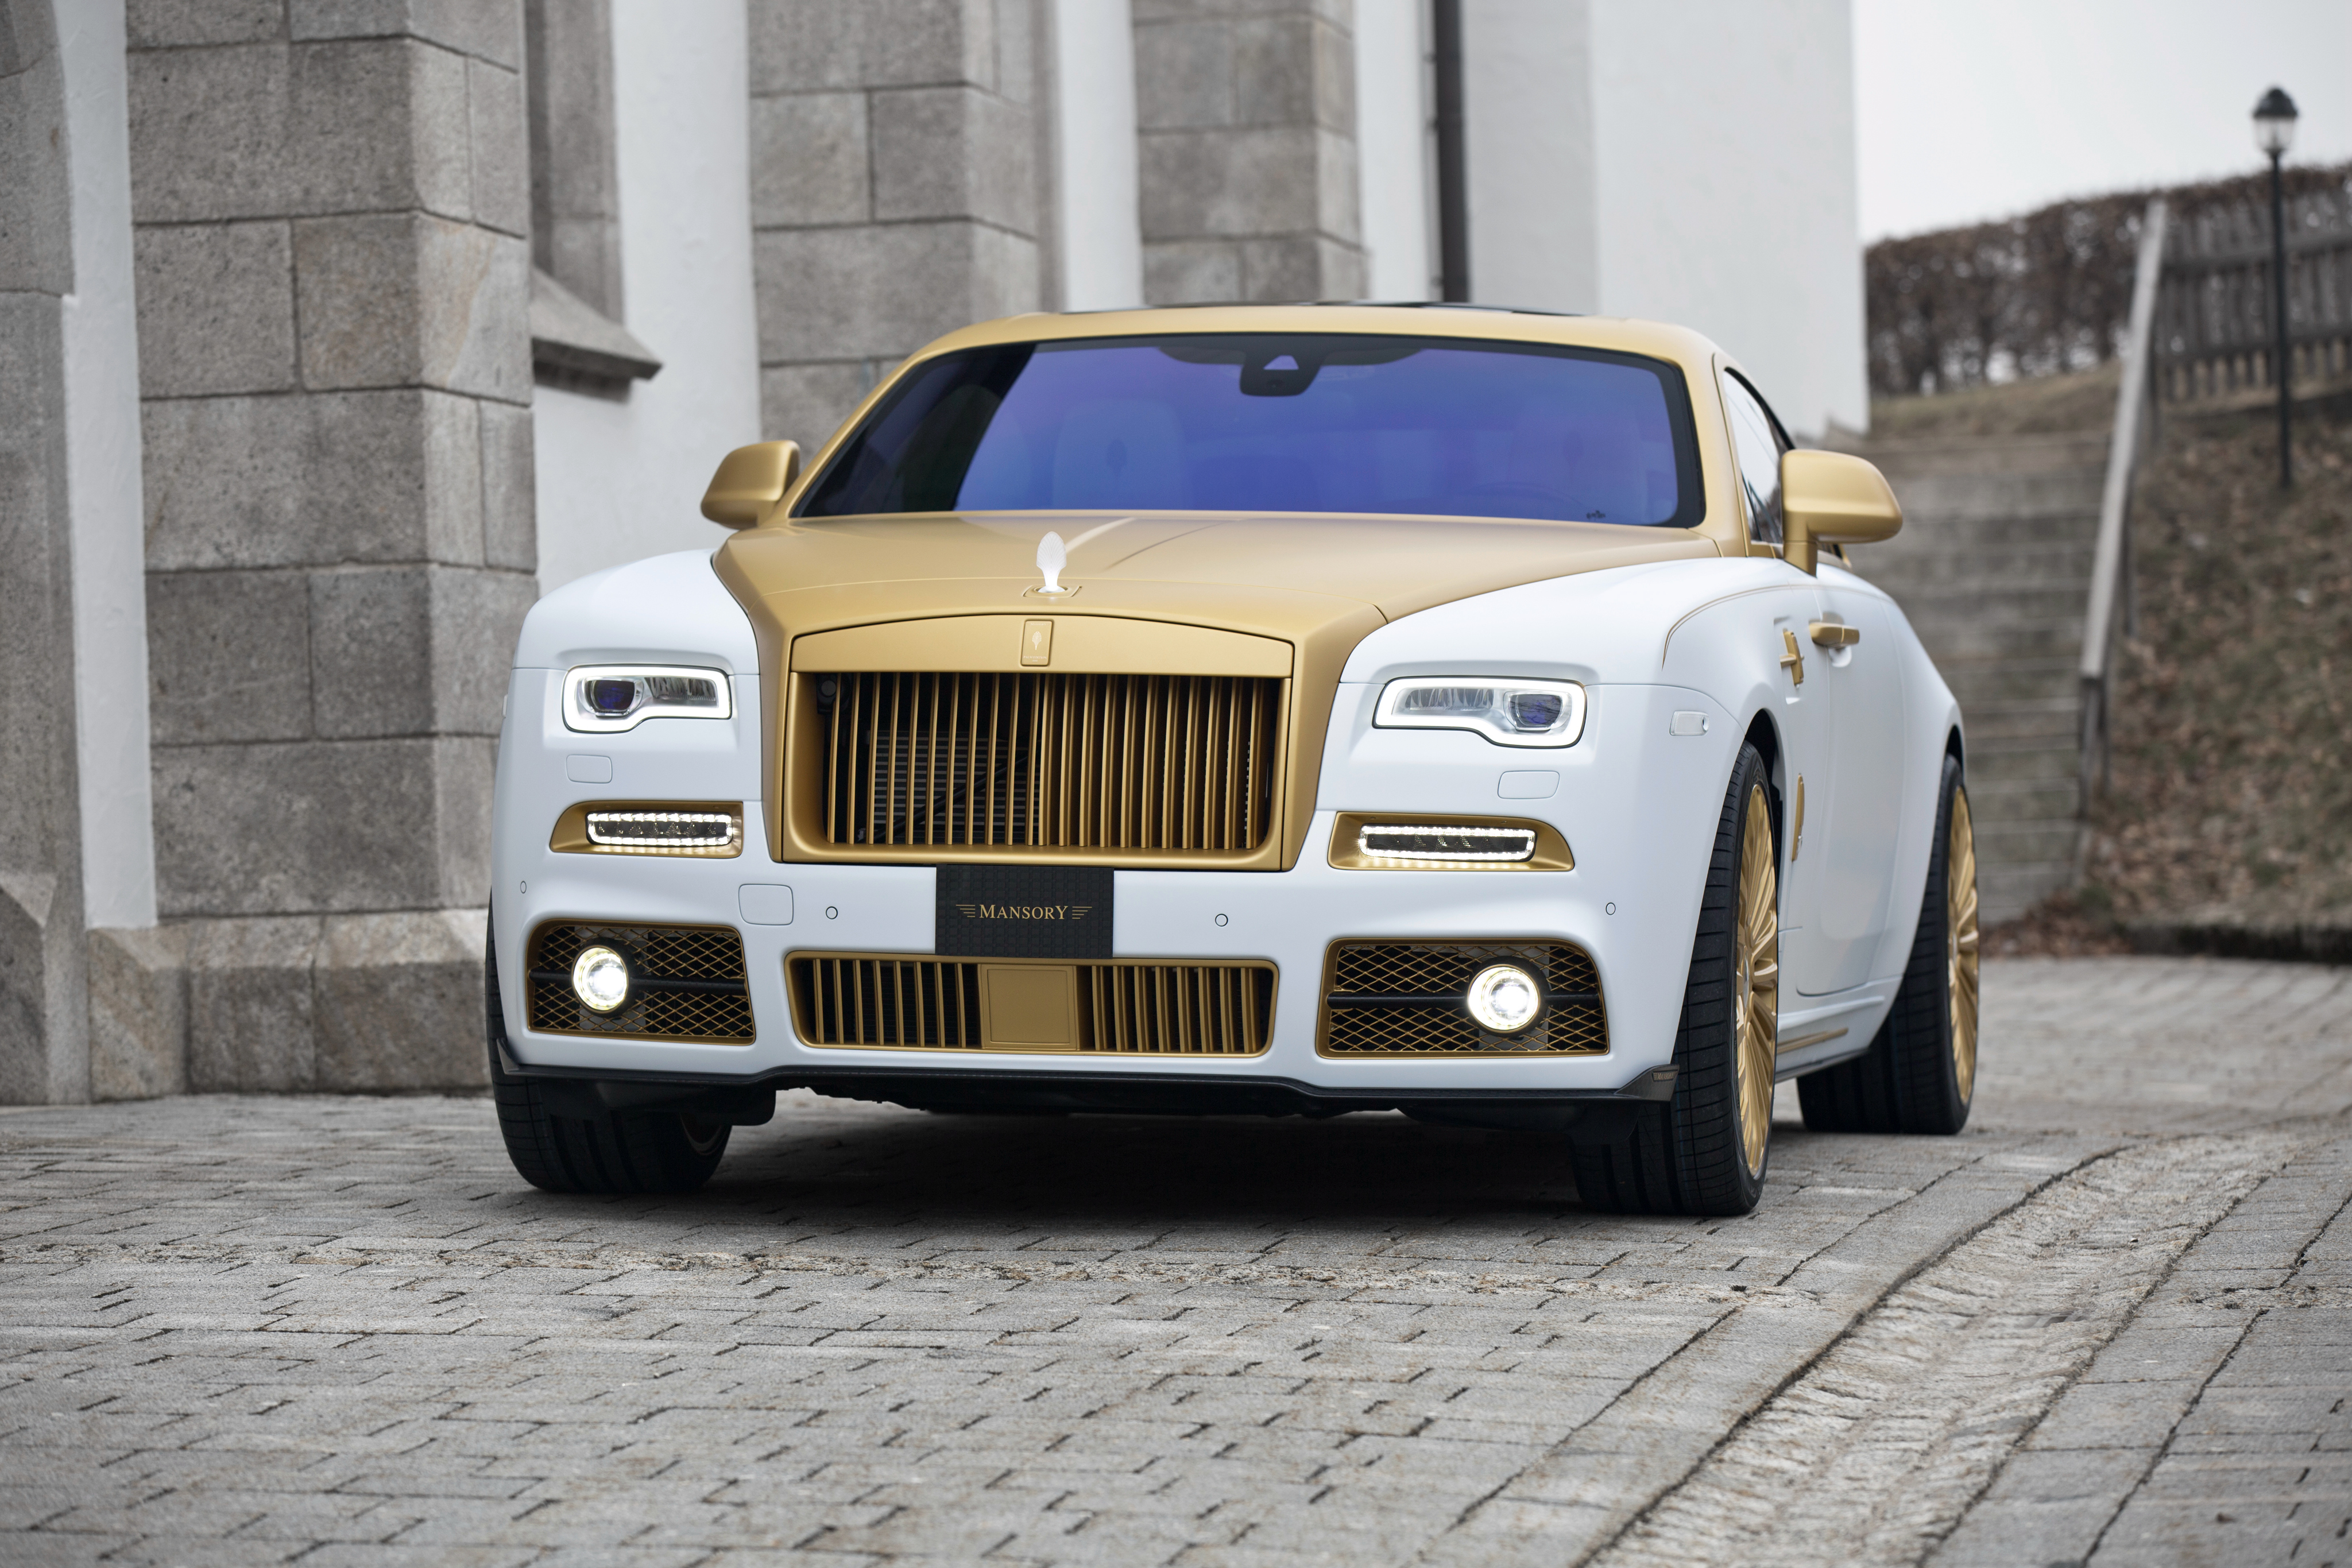 Rolls royce mansory. Rolls Royce Mansory 2022. Rolls Royce Wraith 2020 Mansory. Rolls Royce Wraith Mansory Palm Edition 999. Mansory Rolls Royce Wraith золотой.